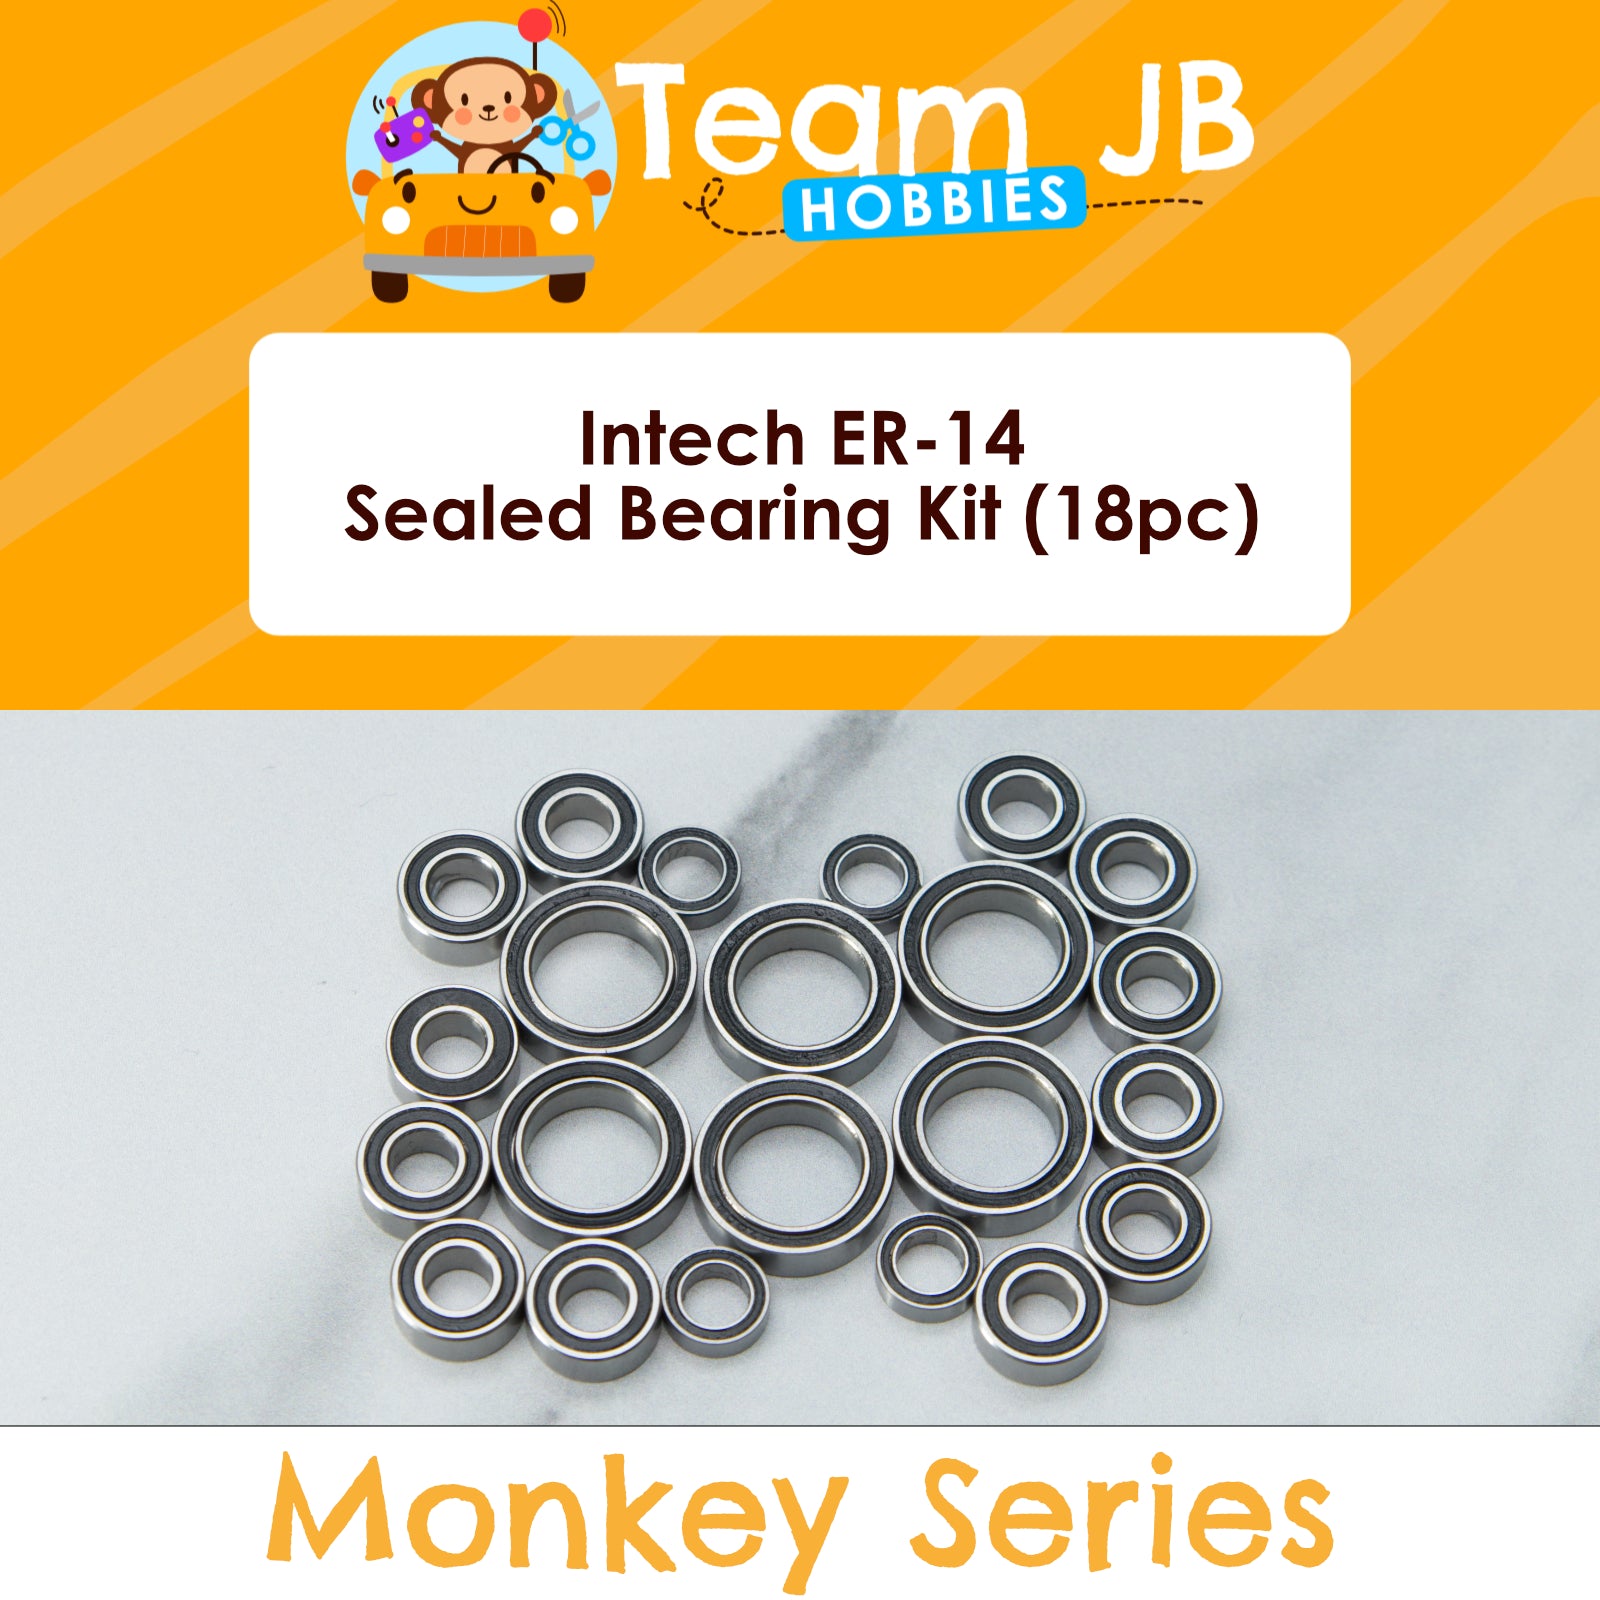 Intech ER-14 - Sealed Bearing Kit